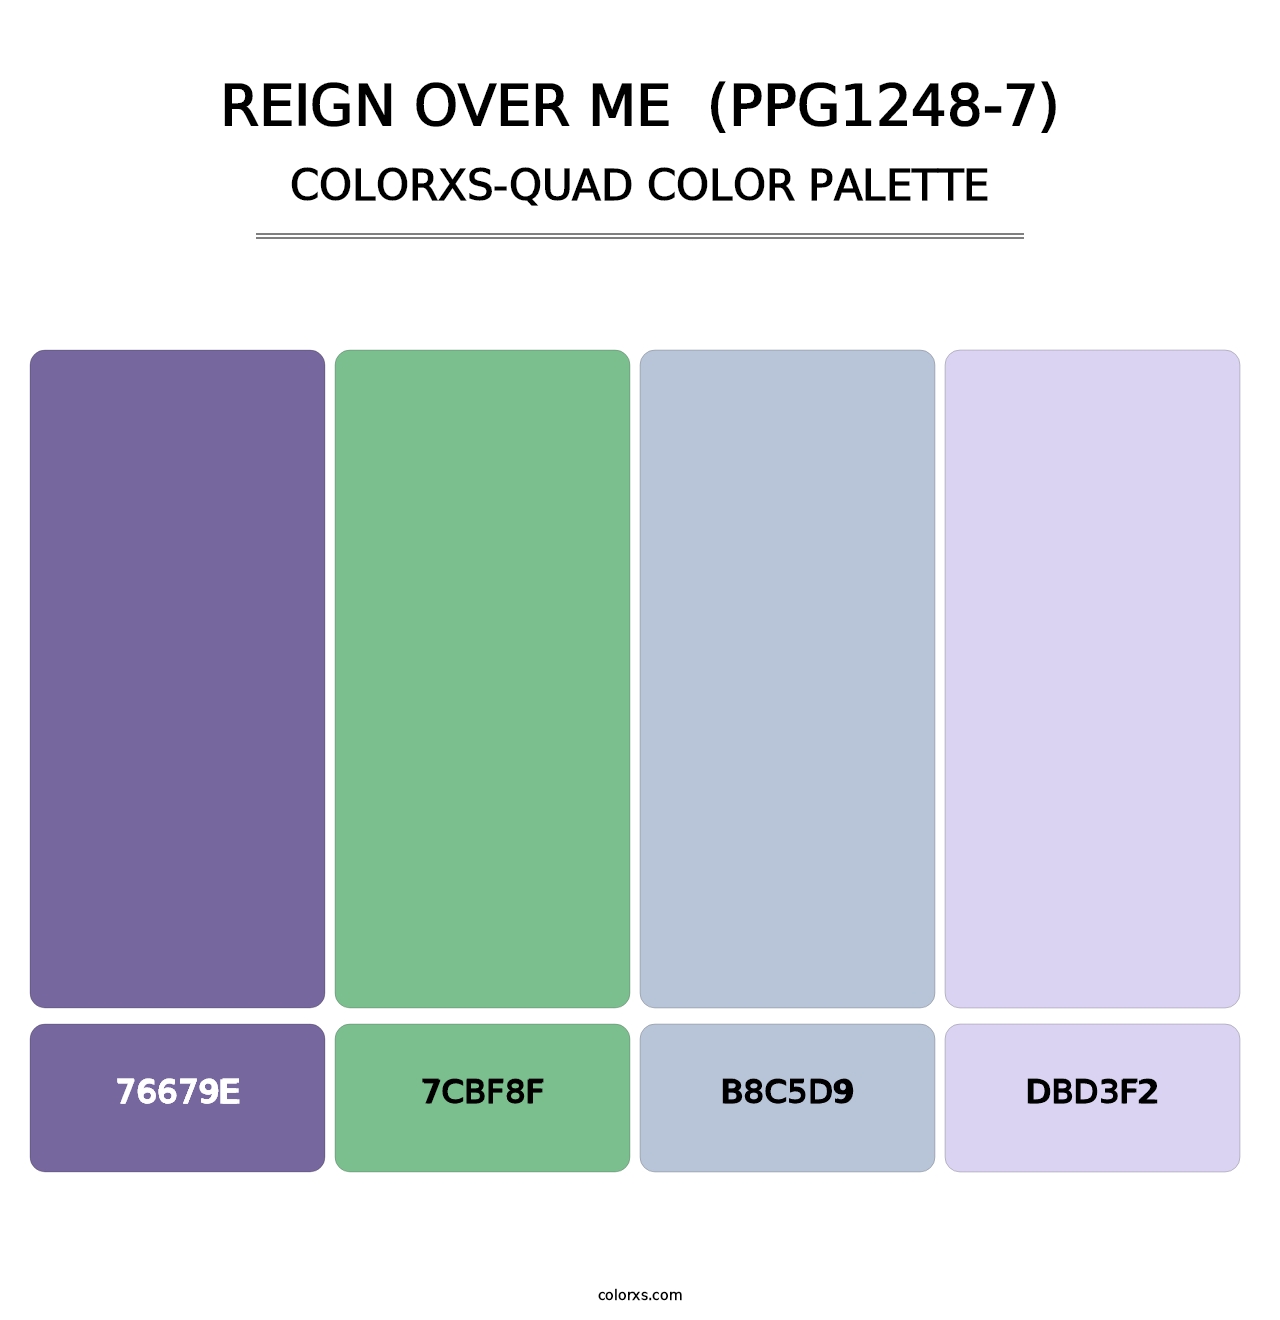 Reign Over Me  (PPG1248-7) - Colorxs Quad Palette